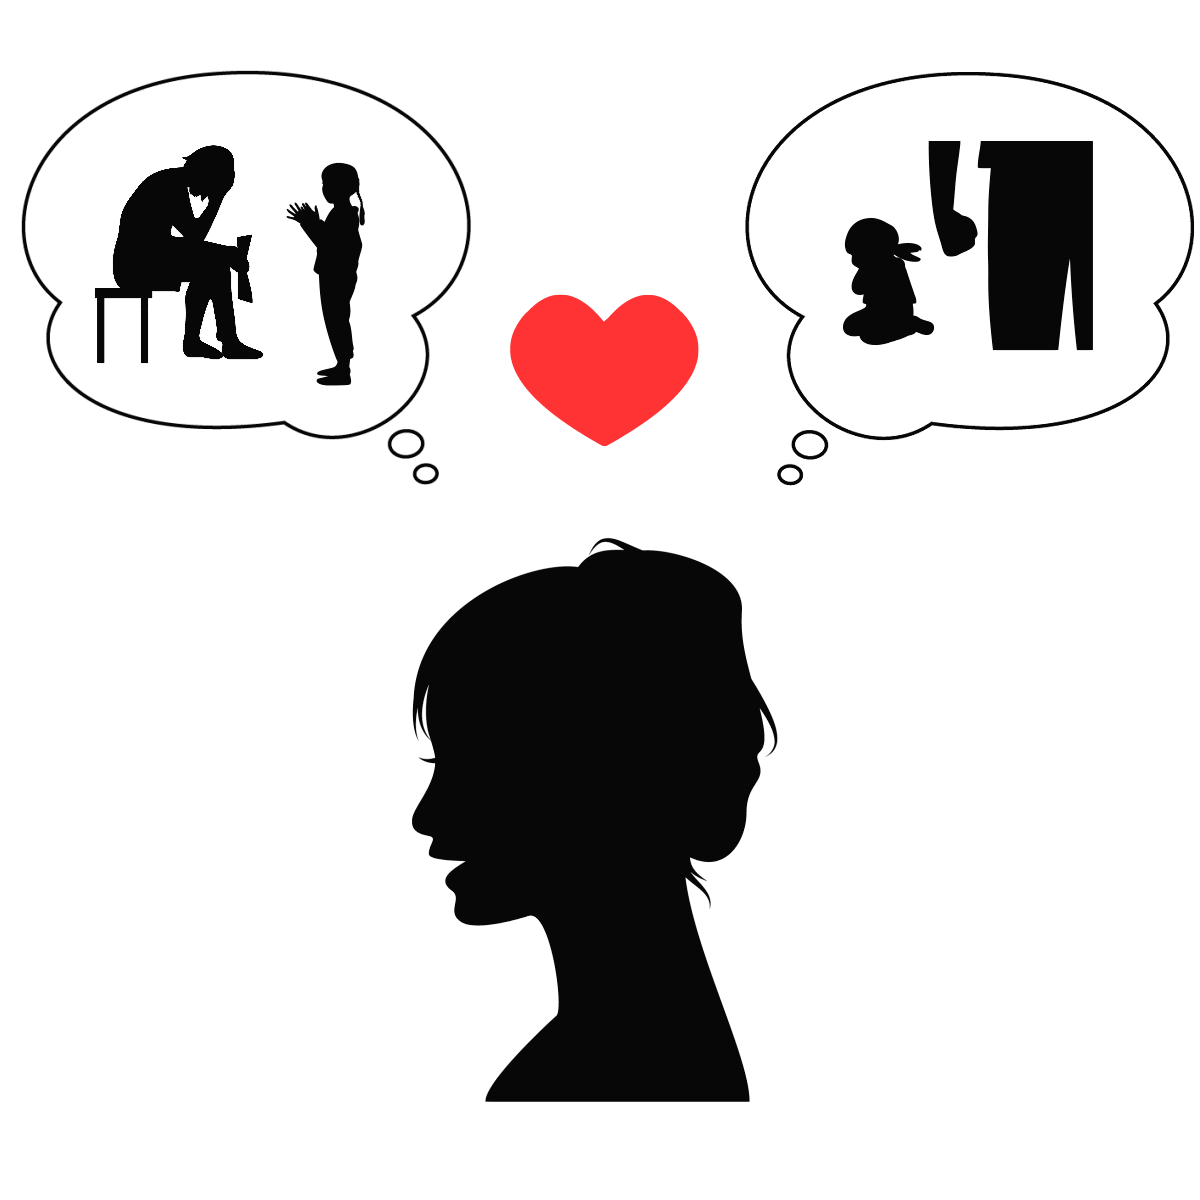 アダルトチルドレン_ピエロタイプの女性の恋愛思考パターンを表すイラスト